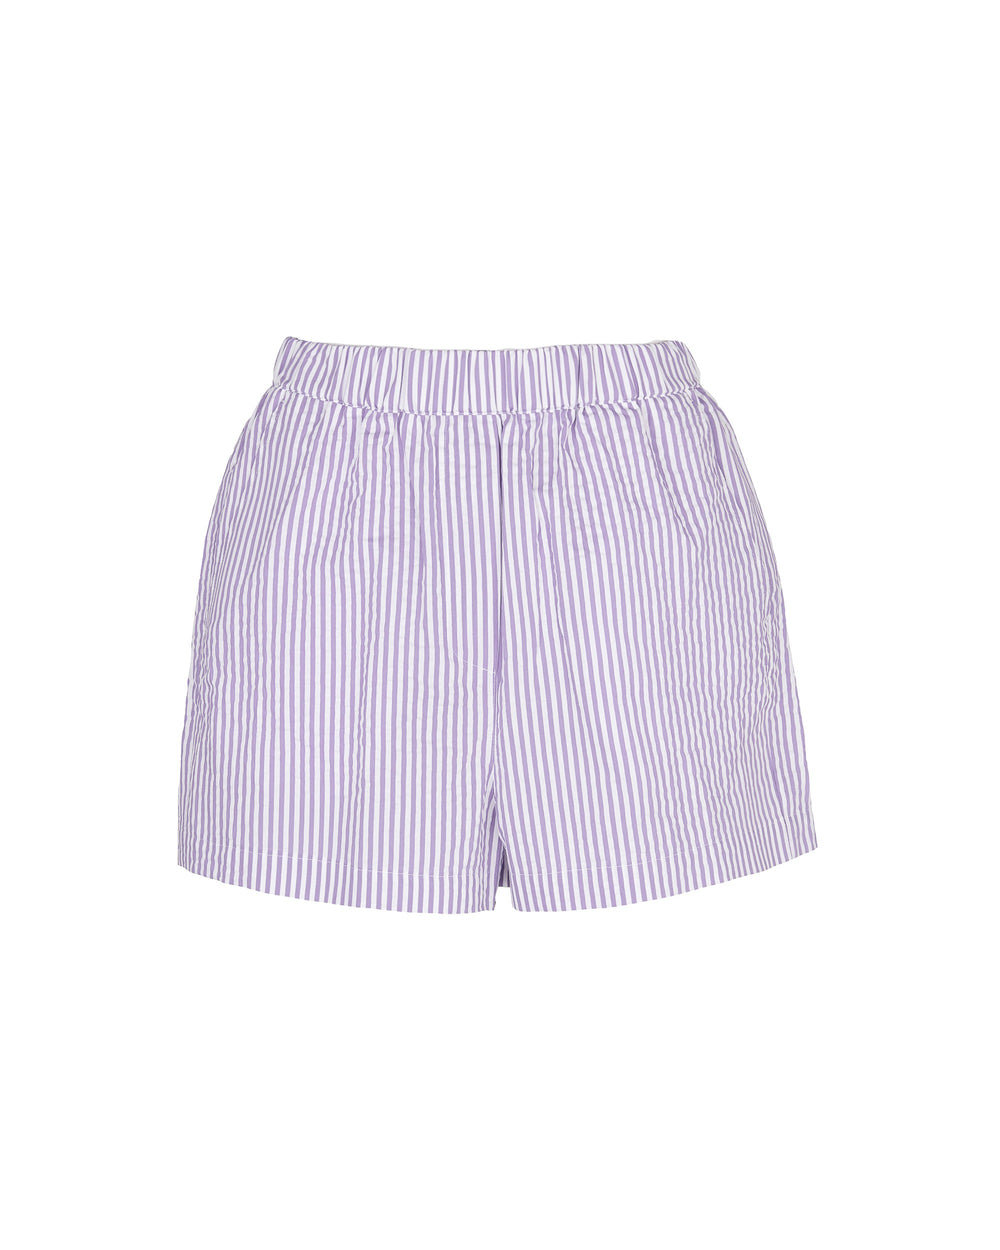 violet seersucker striped shorts